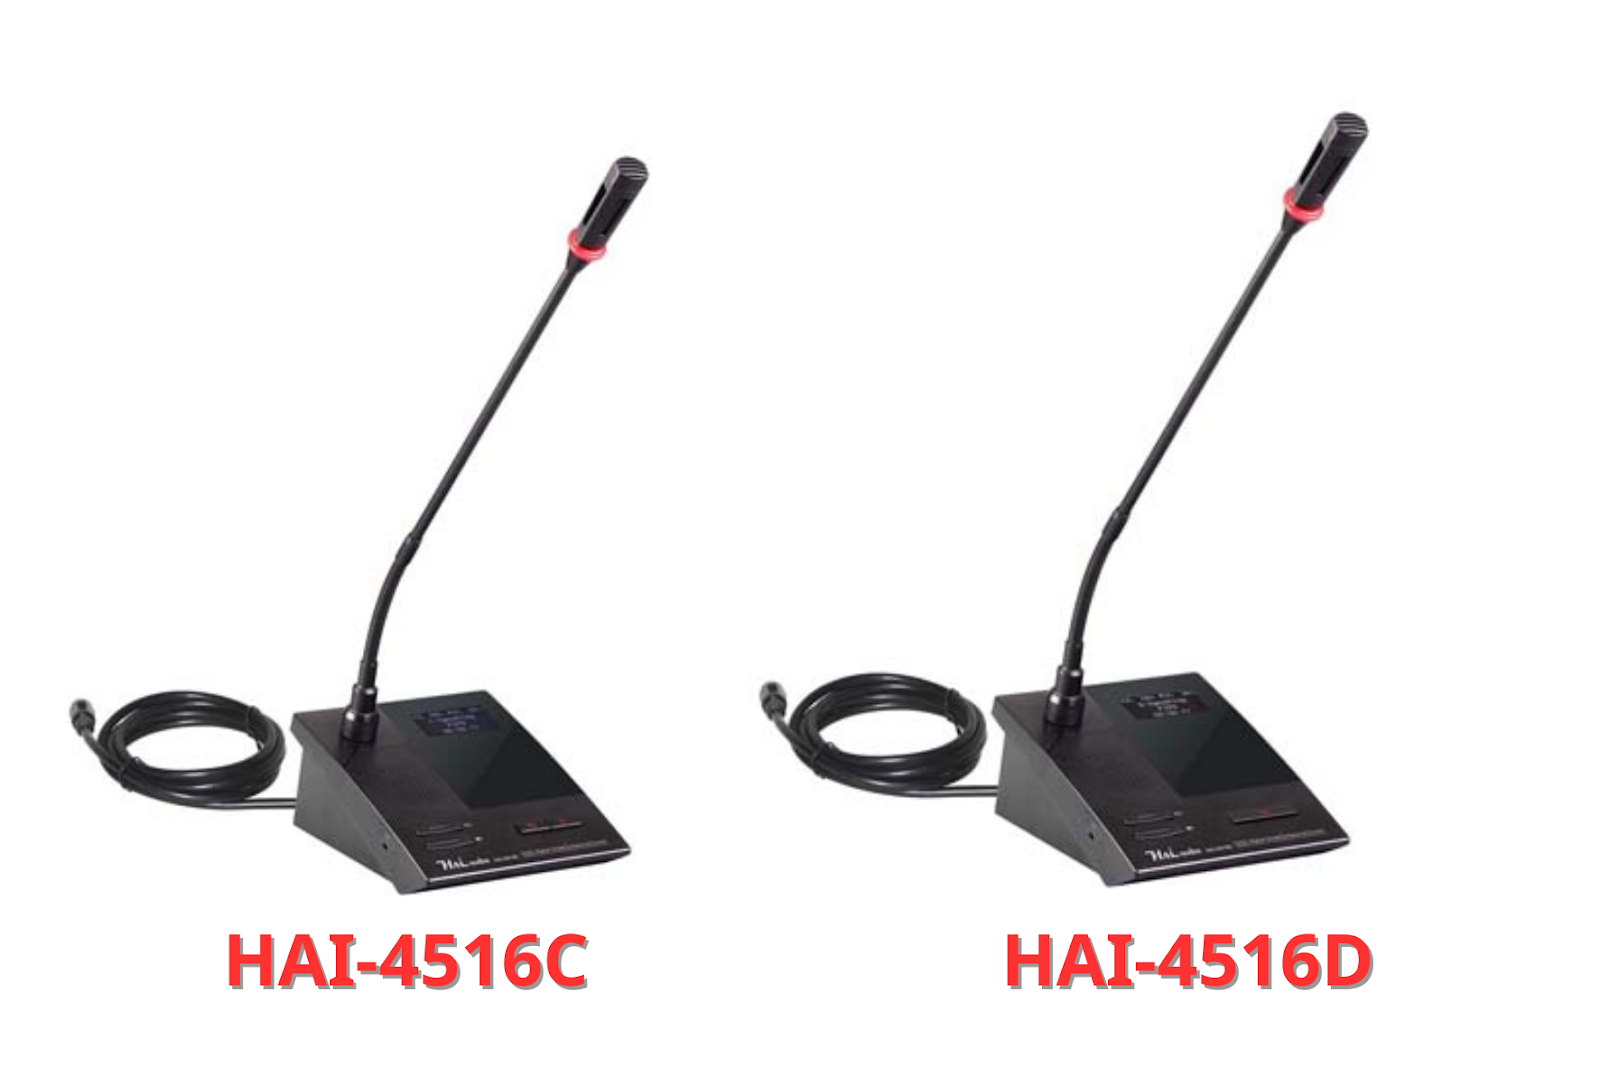 HAI-4516 với độ ổn định cao và kết nối có dây